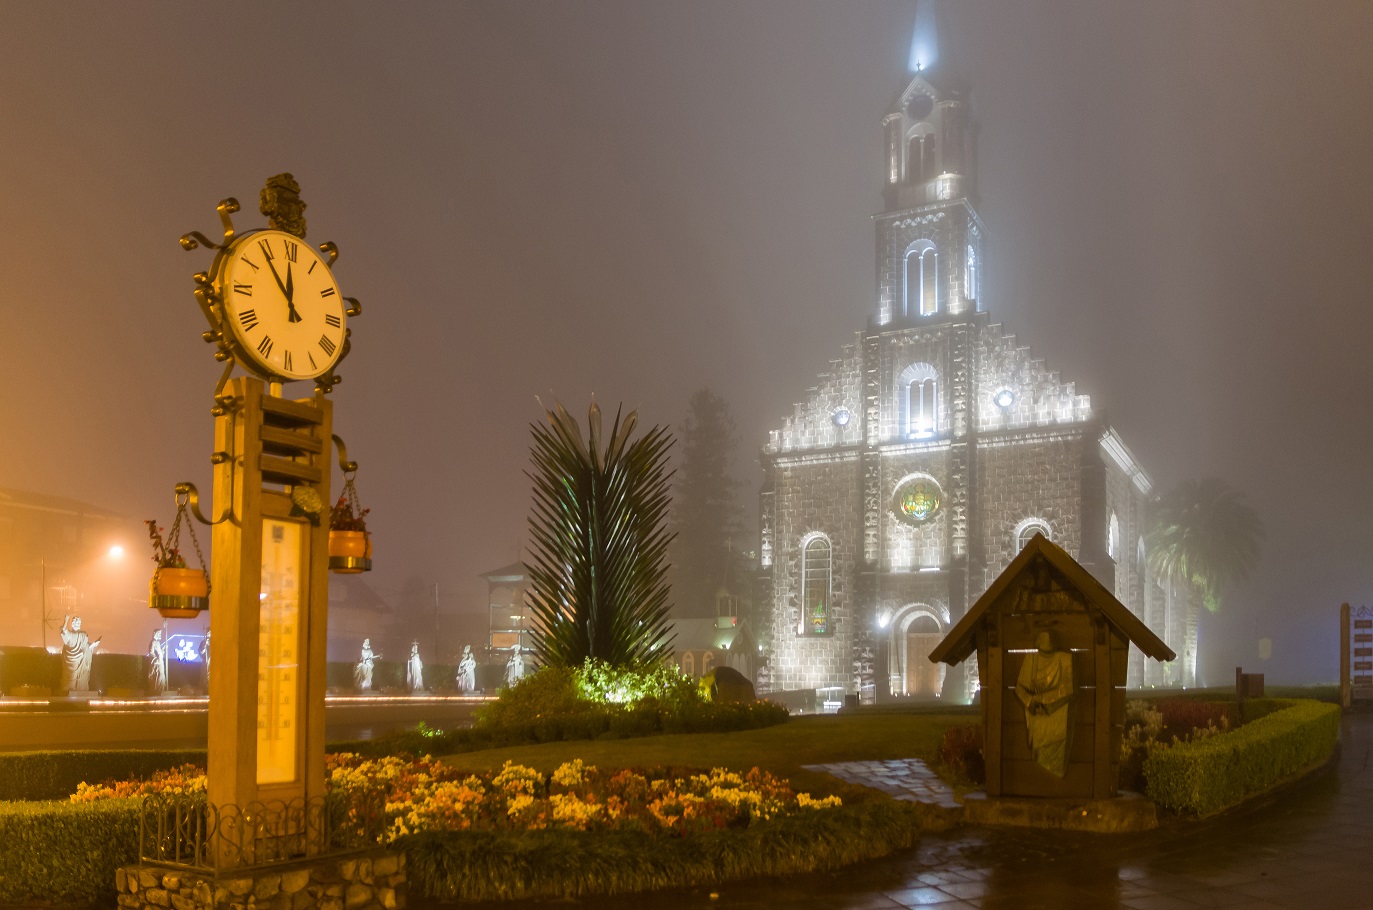 Imagem dos termômetros de Gramado durante a noite, ao fundo, a Igreja Matriz de São Iluminada e desfocada devido a neblina